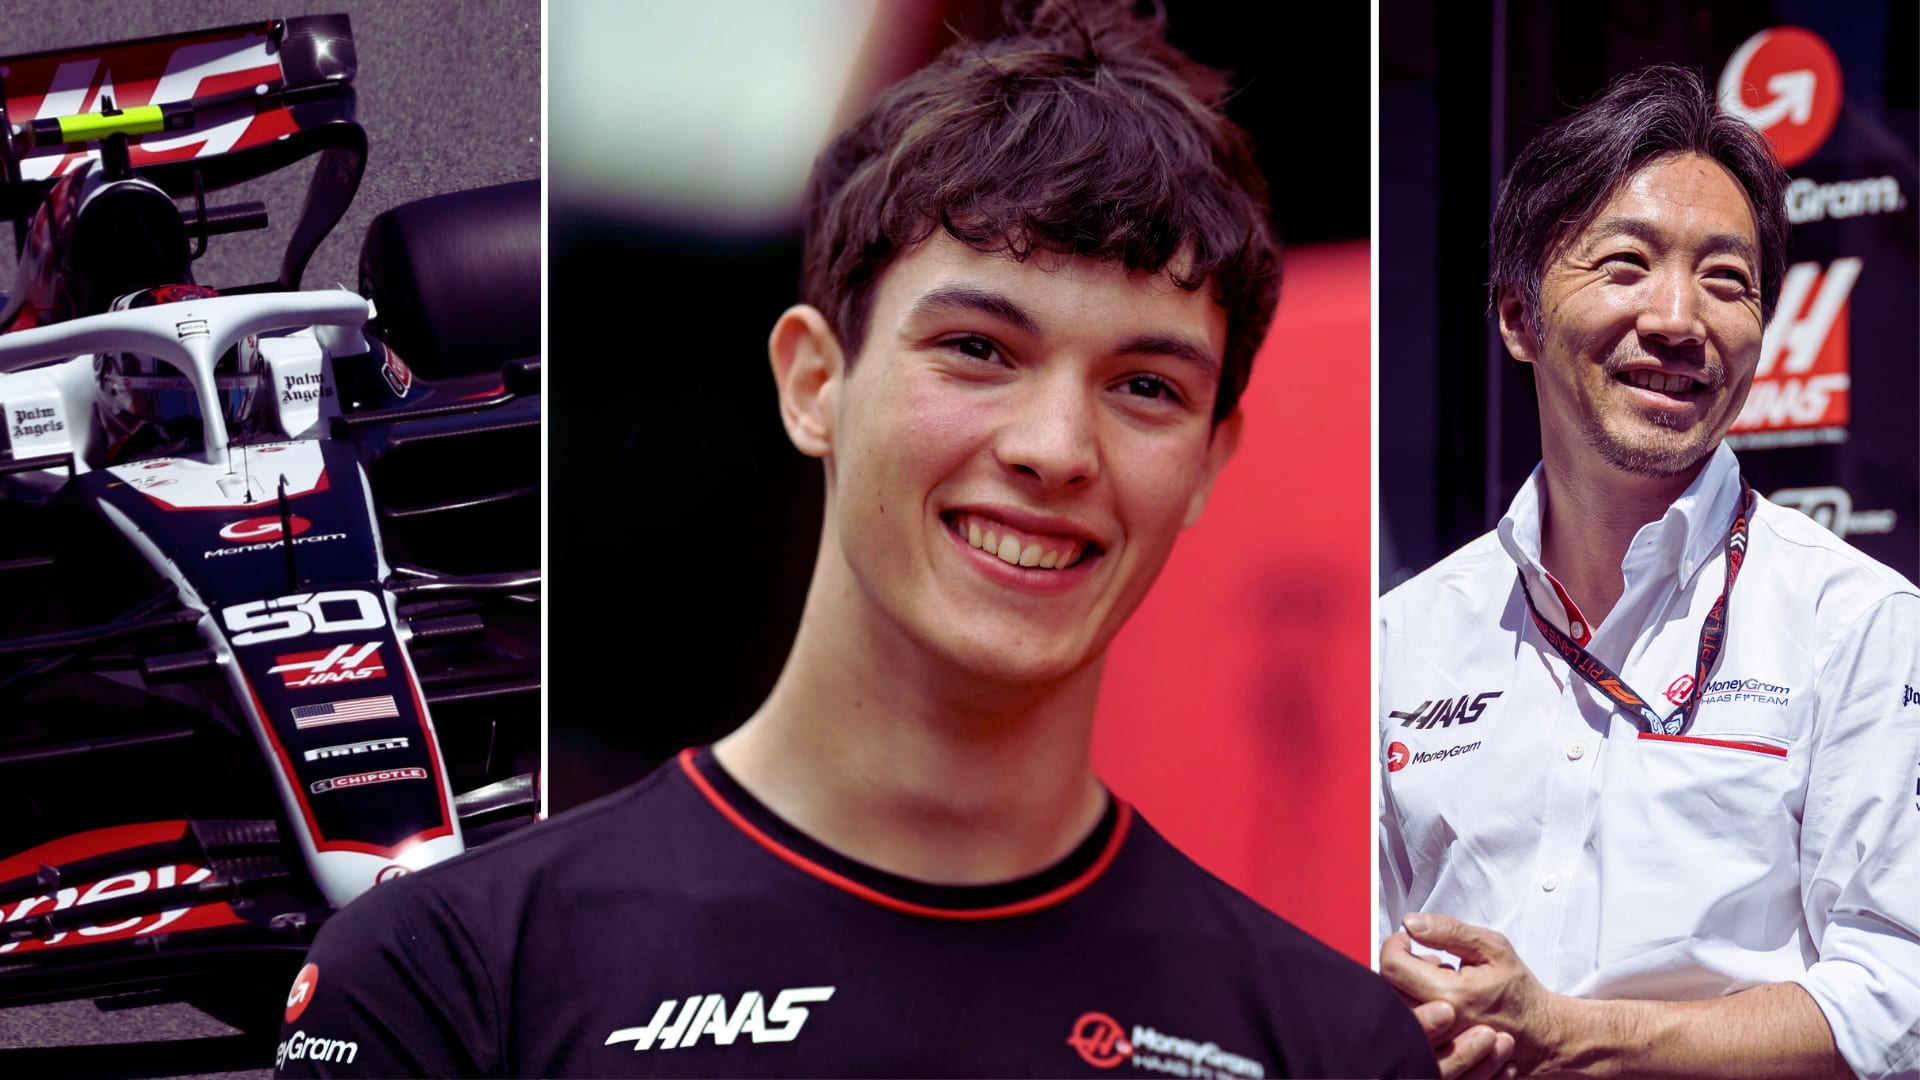 ‘La combinación perfecta’ – Biermann y el nuevo jefe del equipo Komatsu hablan sobre el contrato plurianual del joven de 19 años con Haas